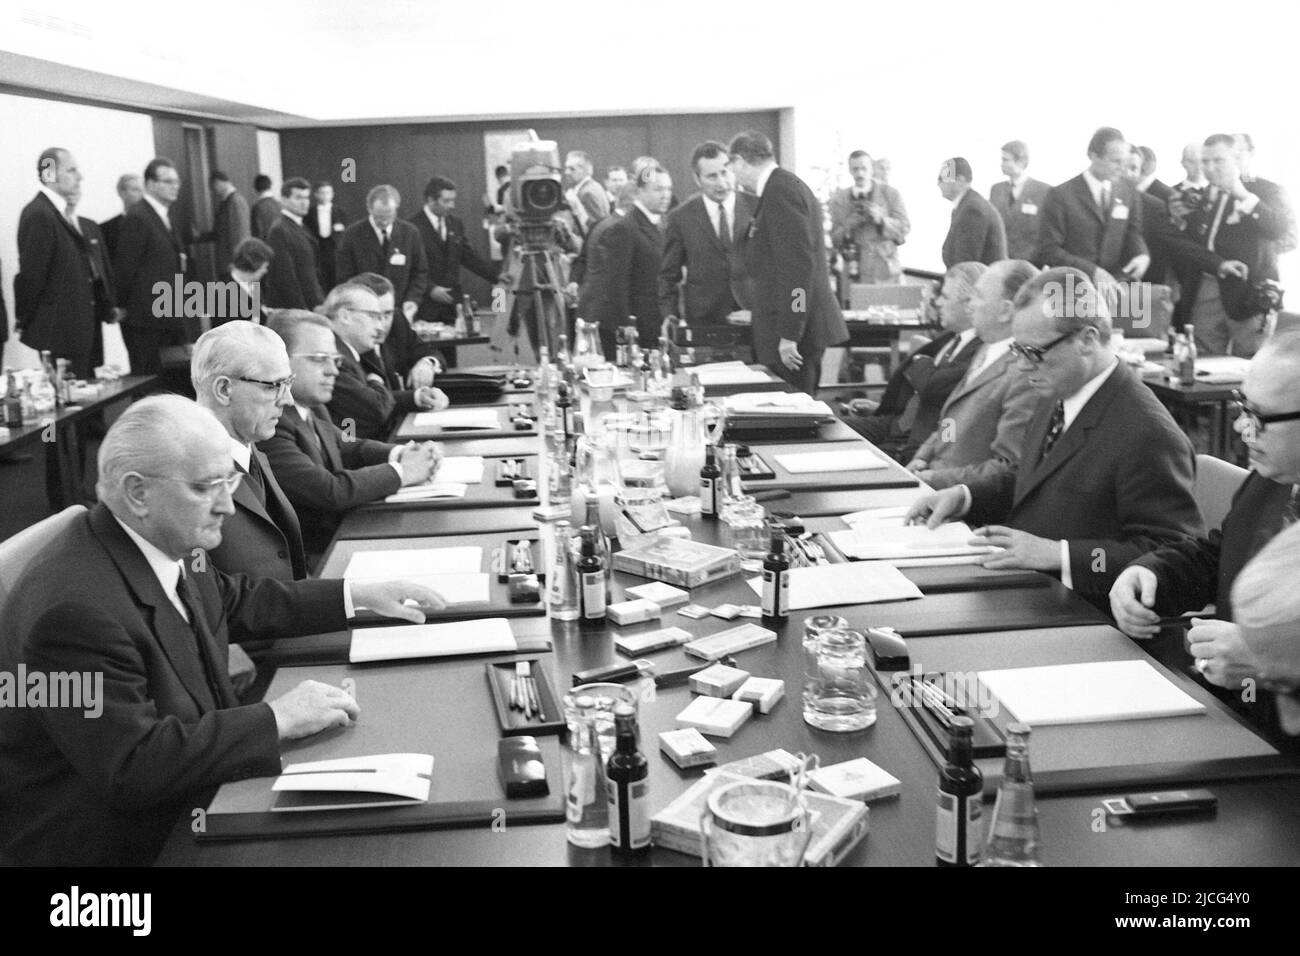 Politik: Staatsbesuch innerdeutsche Kontakte 21.05.1970: DDR-Delegation (links) mit Staatsratsvorsitzendem Willi STOPH und BRD-Delegation unter der Leitung von Willy BRANDT (rechts, gegenüber ihm) Â Stockfoto